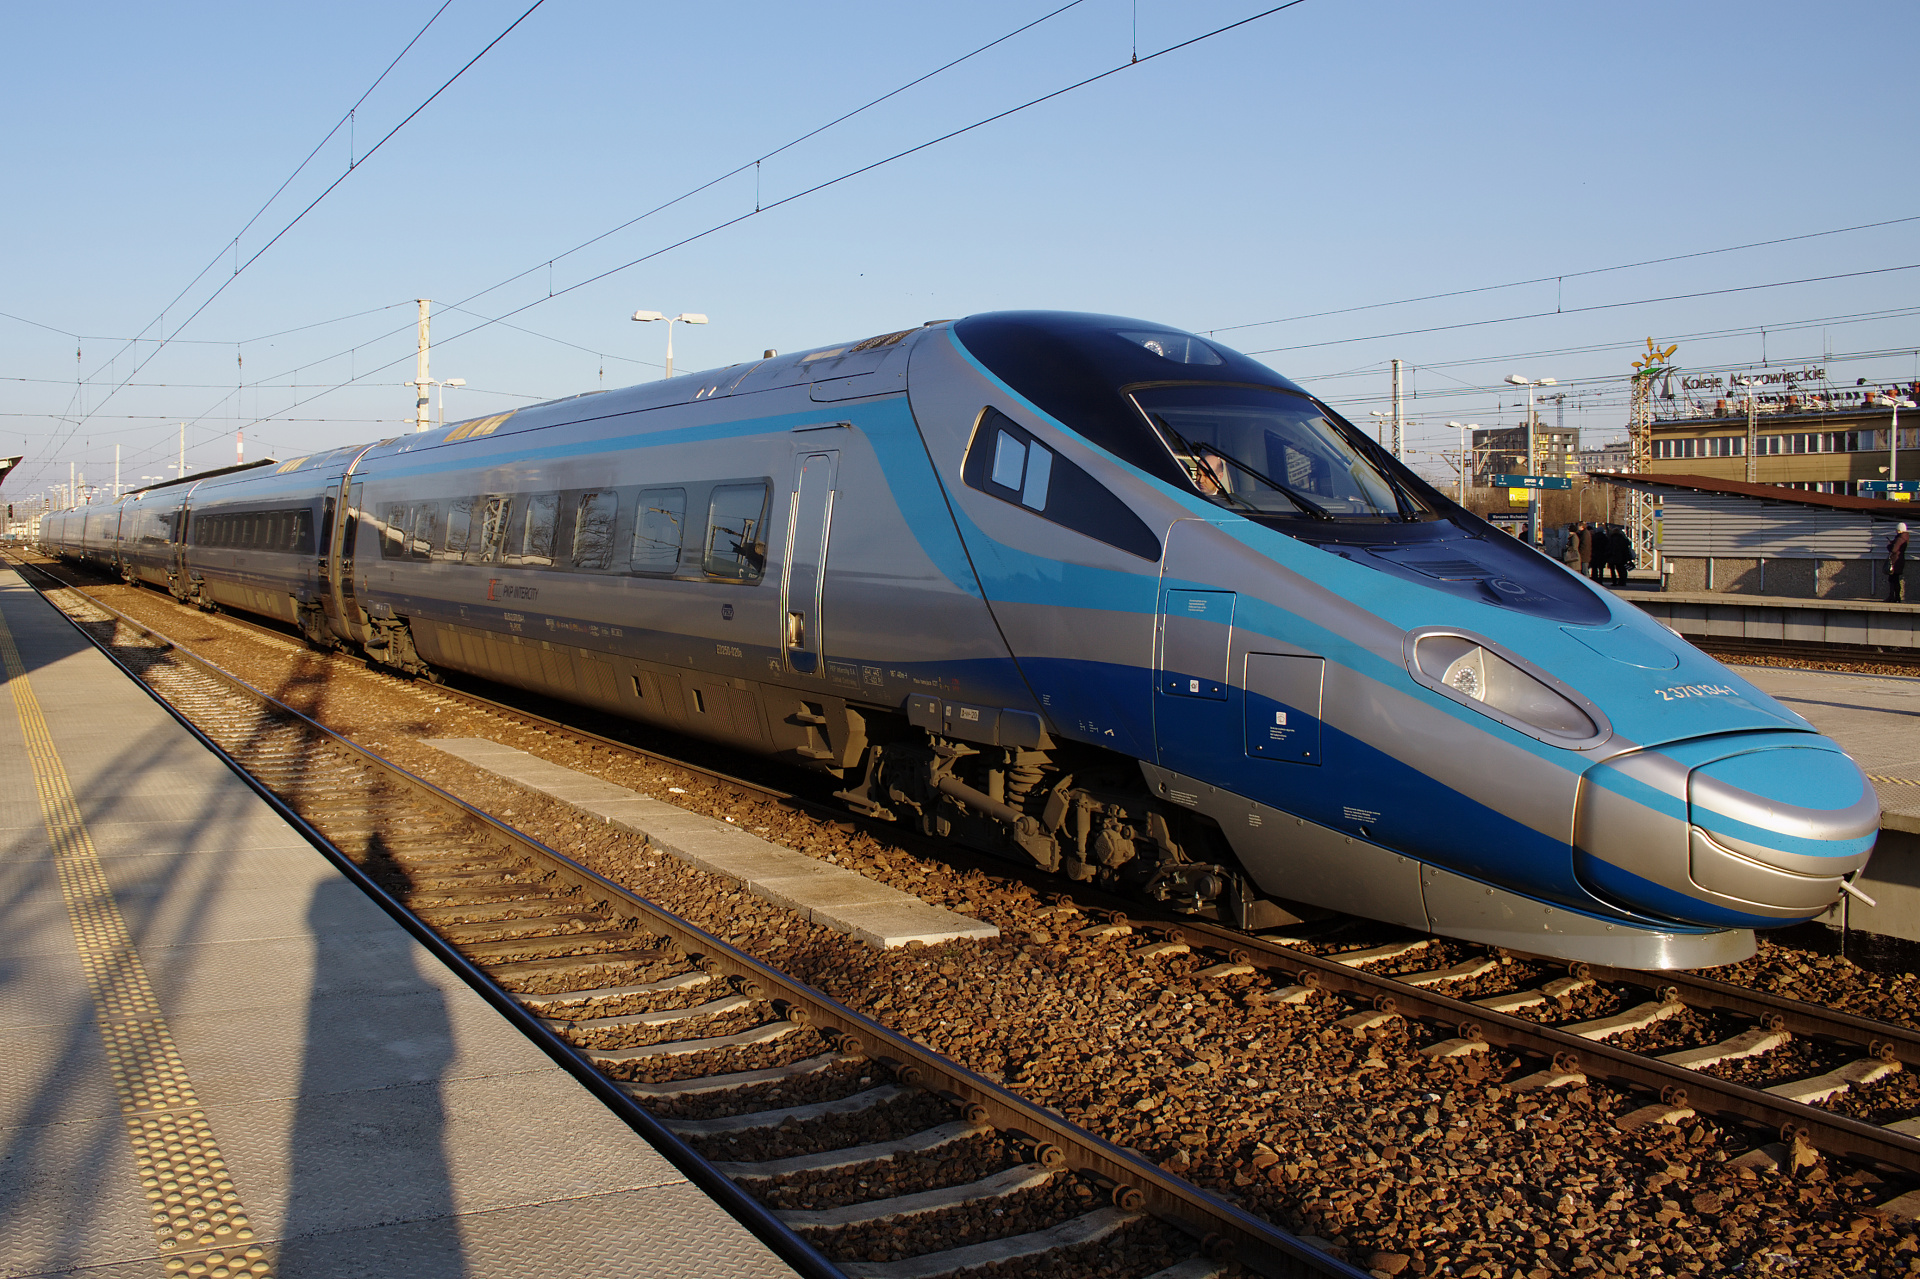 ED250-019 (Pojazdy » Pociągi i lokomotywy » Alstom ETR 610 Pendolino)